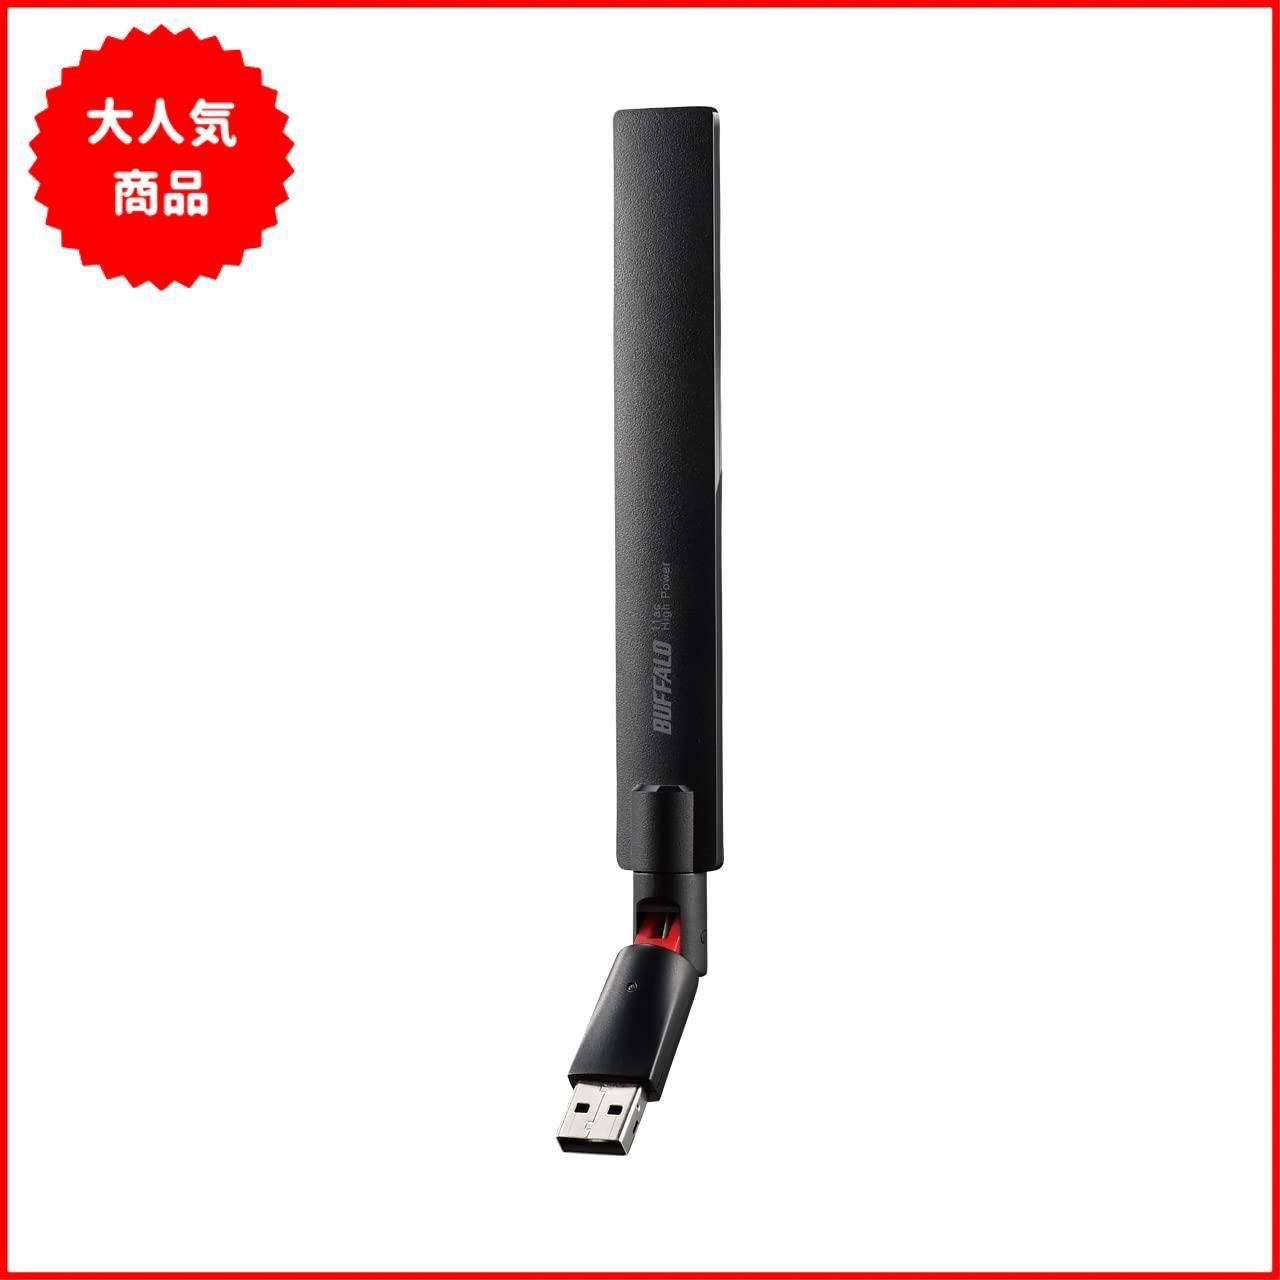 バッファロー WiFi 無線LAN 子機 USB2.0用 11ac/n/a/g/b 433Mbps ビームフォーミング機能搭載 日本メーカー WI-U2 -433DHP/N - メルカリ